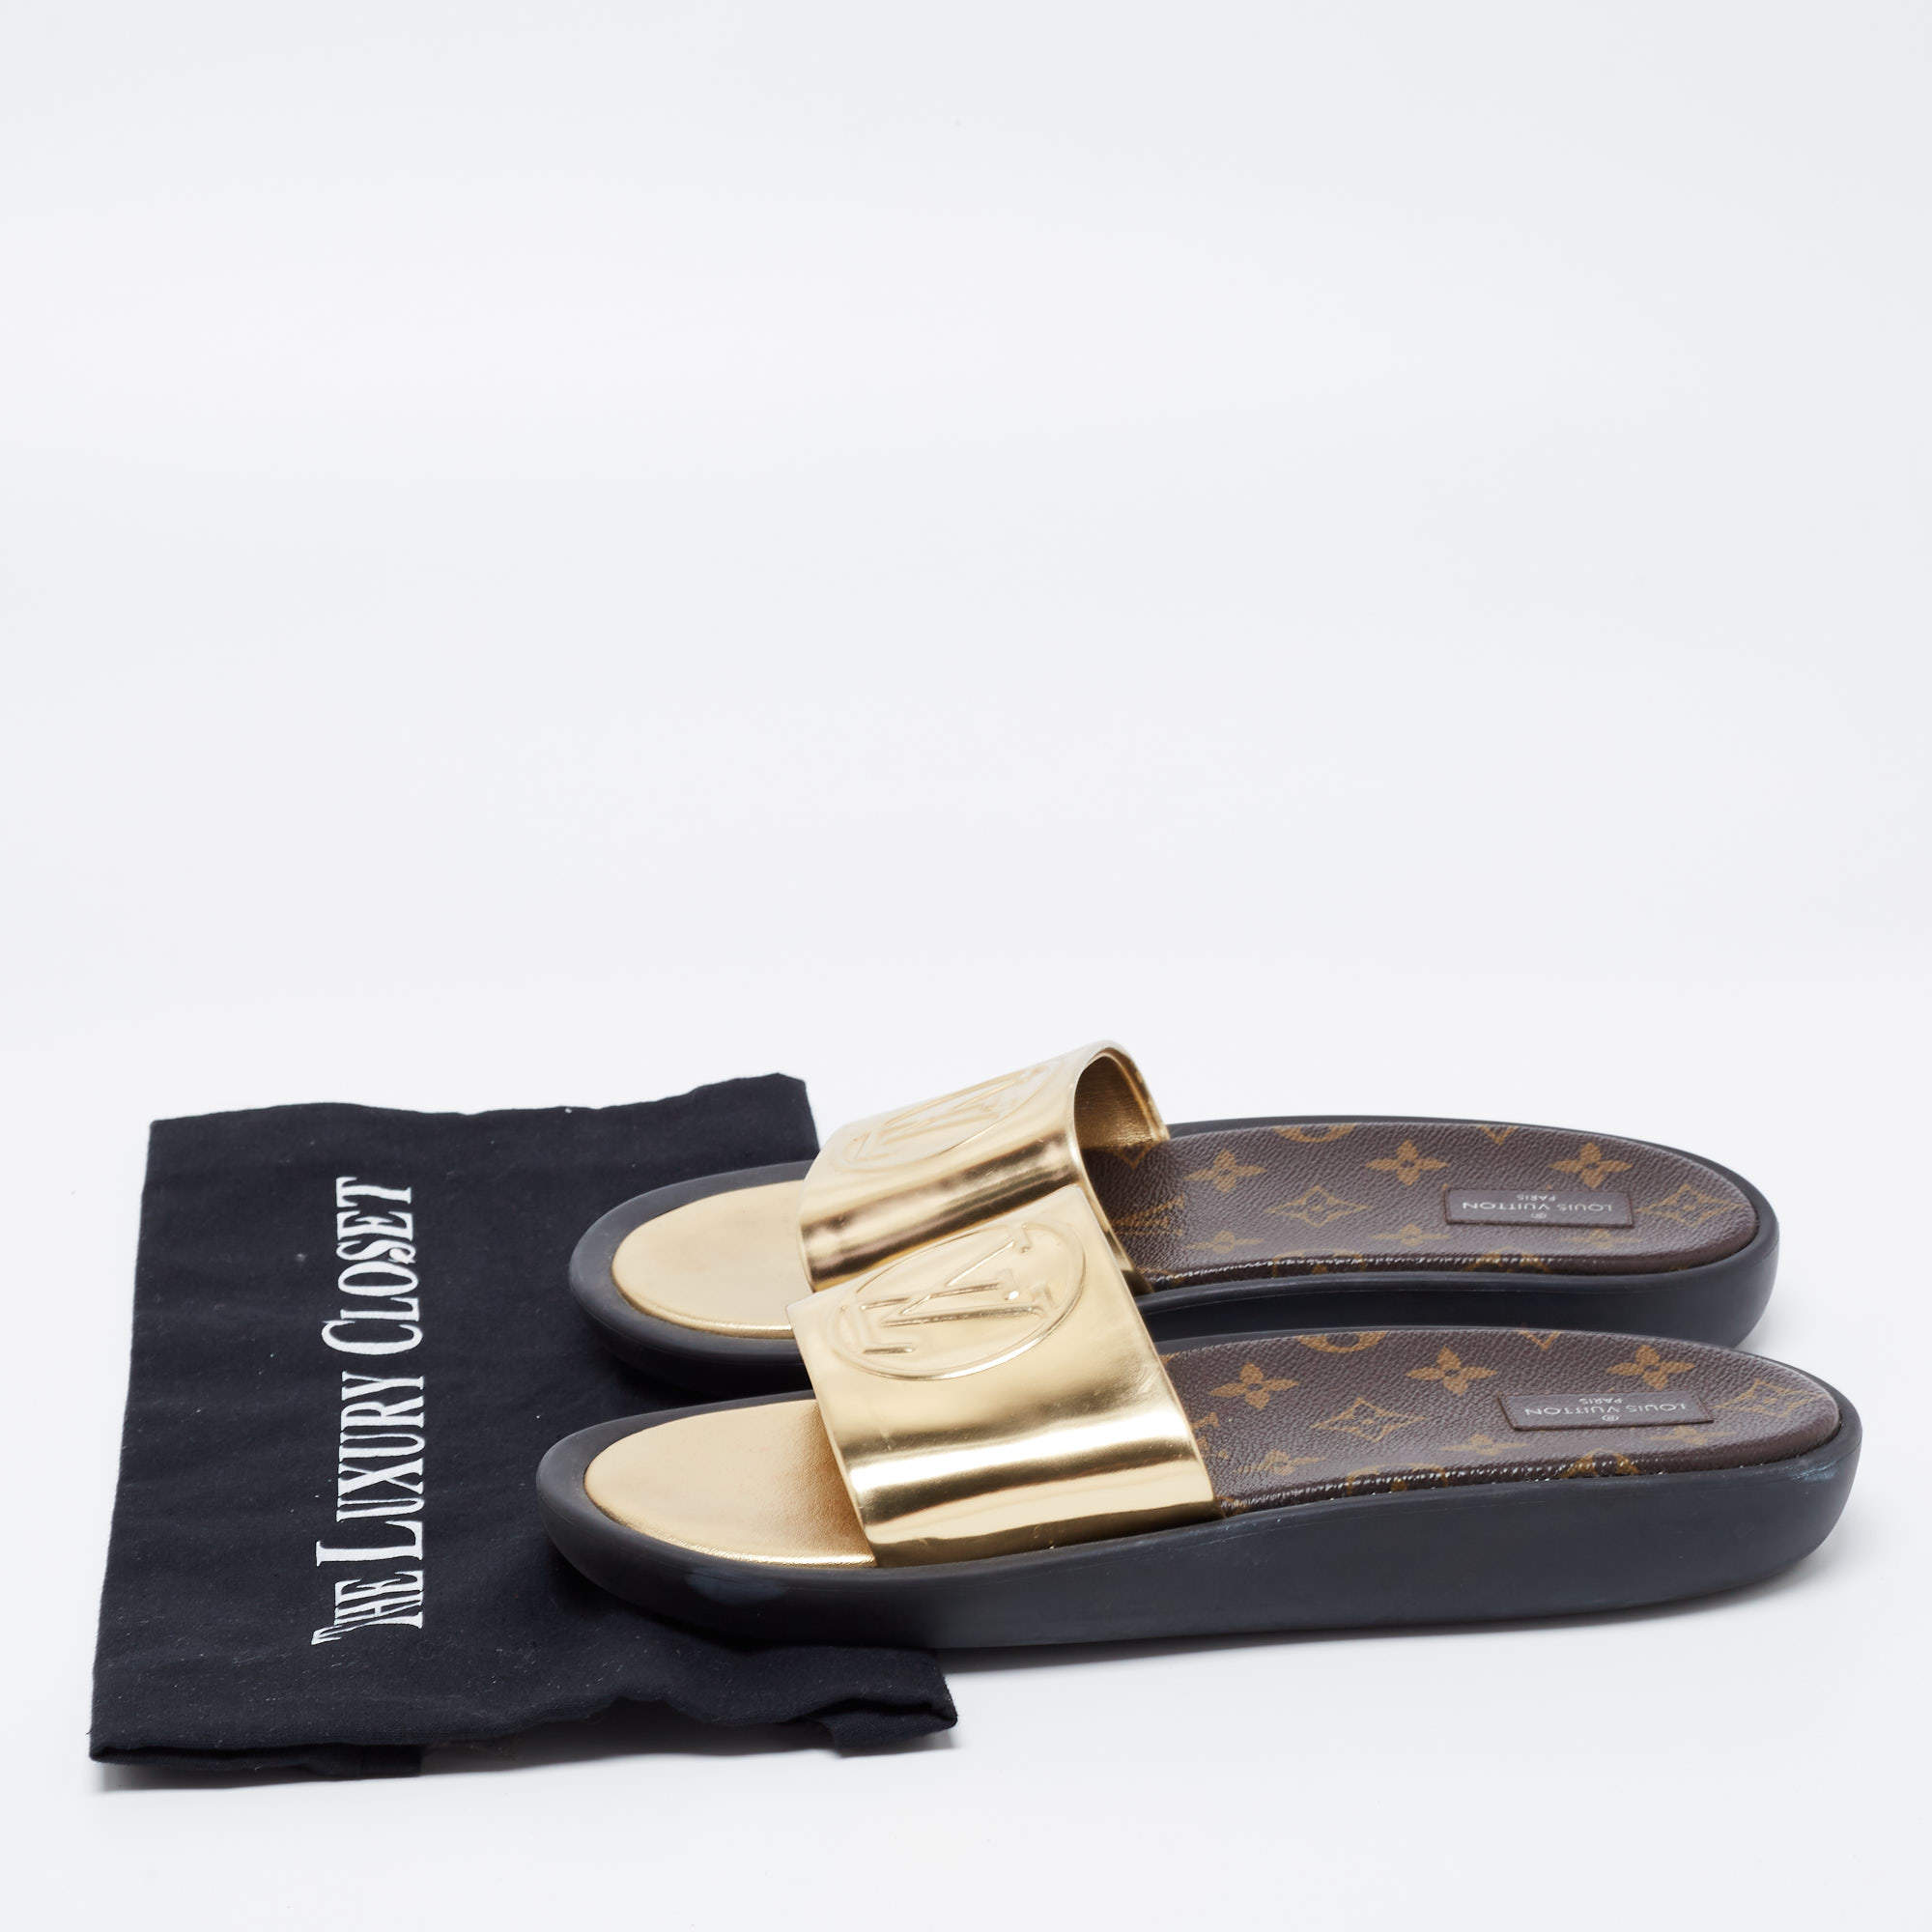 Louis Vuitton Gold Leather Sunbath Flat Slides Size 39 Louis Vuitton